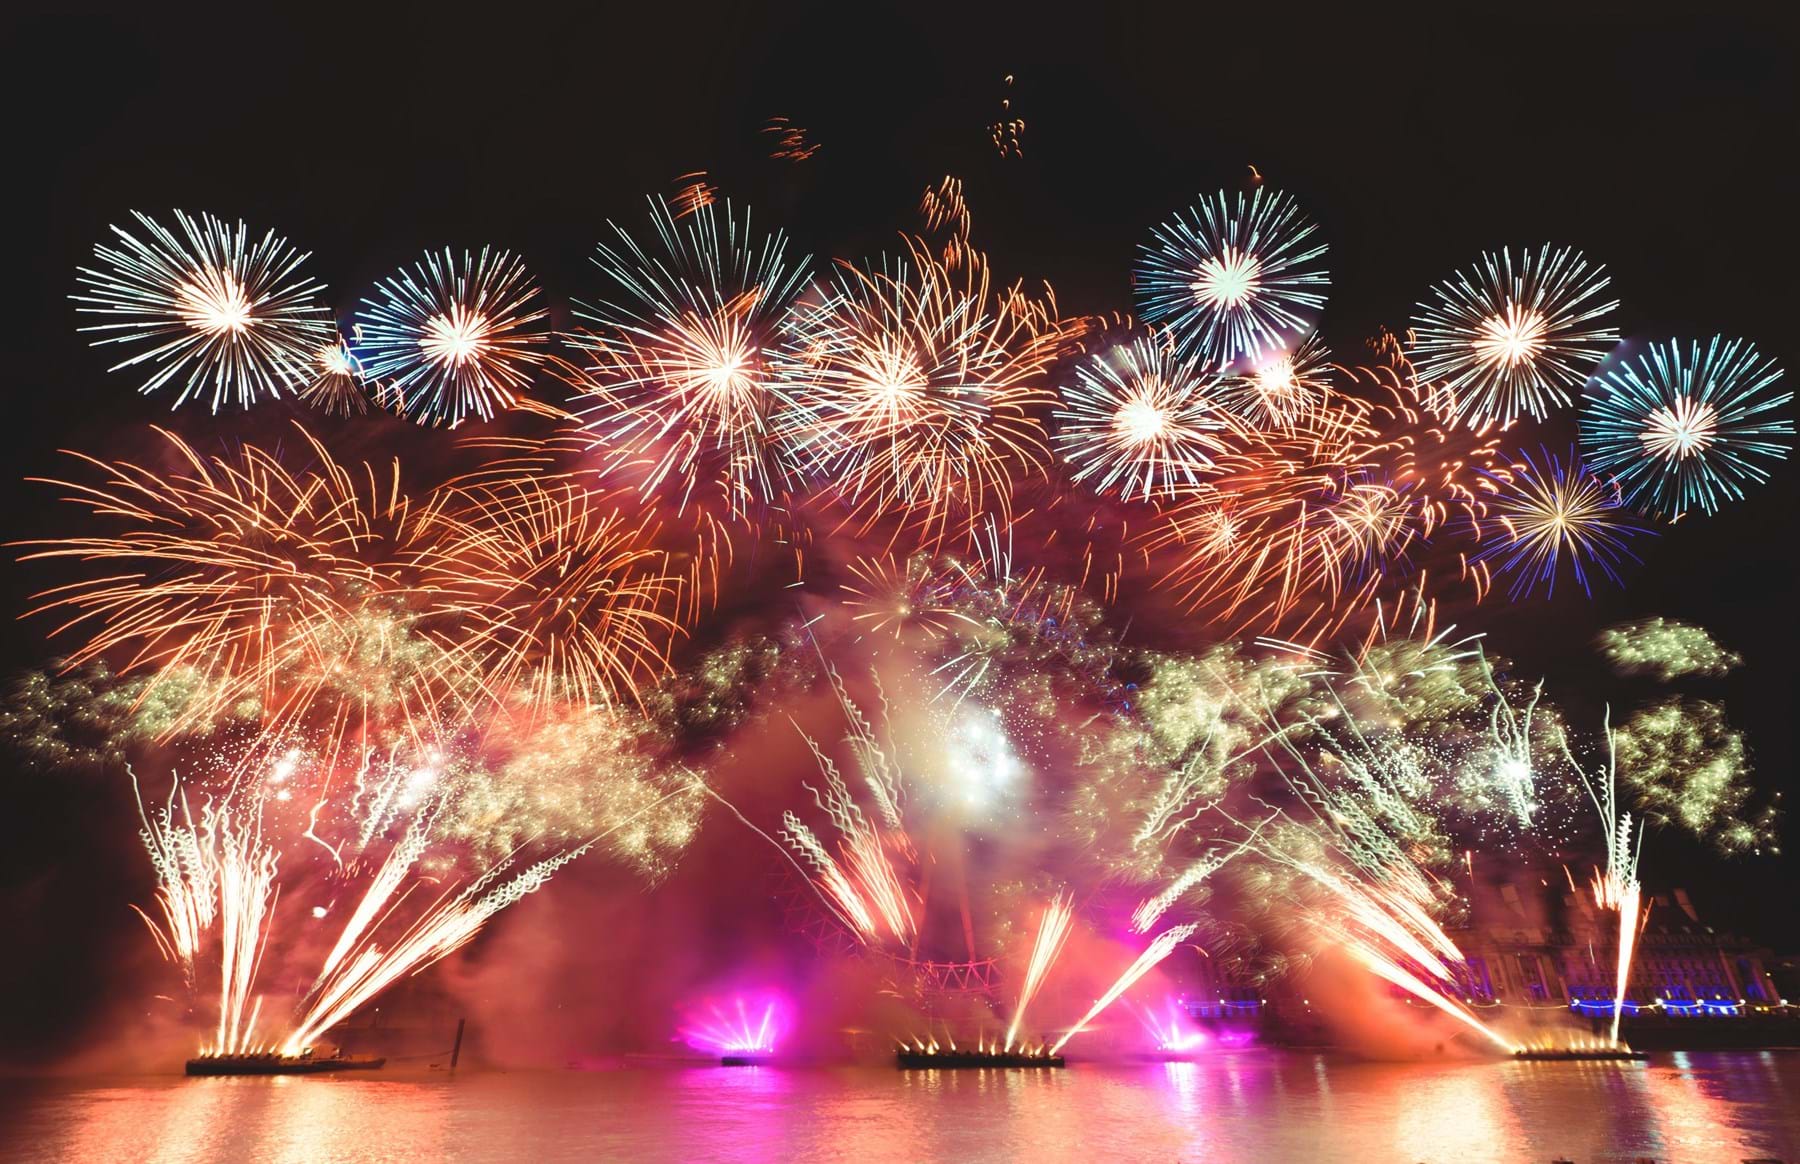 London New Year's Eve fireworks @towfiqu barbhuiya